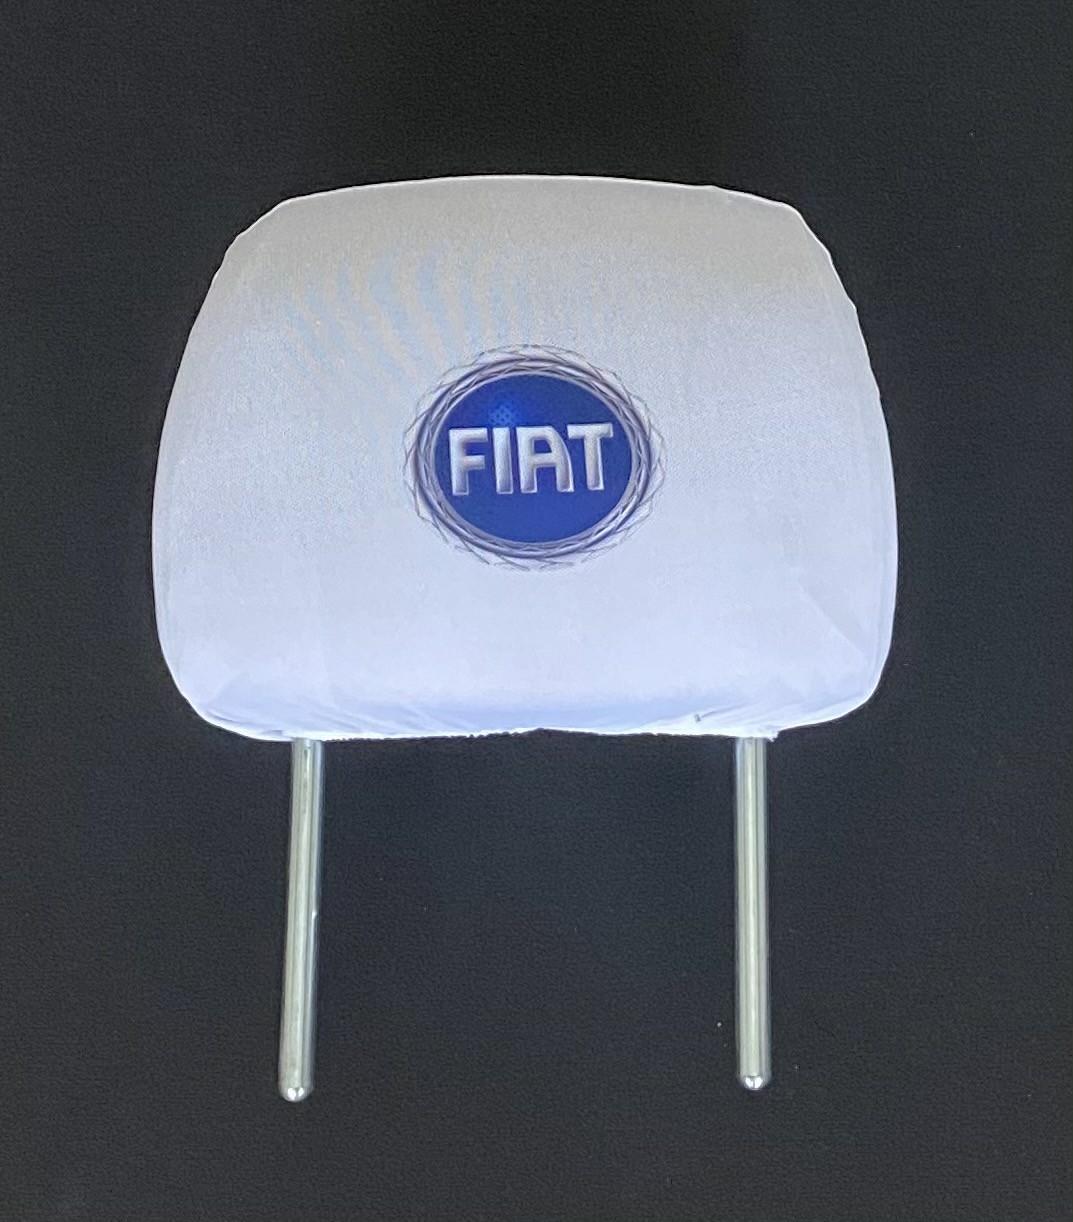 Biele návleky na opierky hlavy s logom Fiat (staré logo) - 2ks